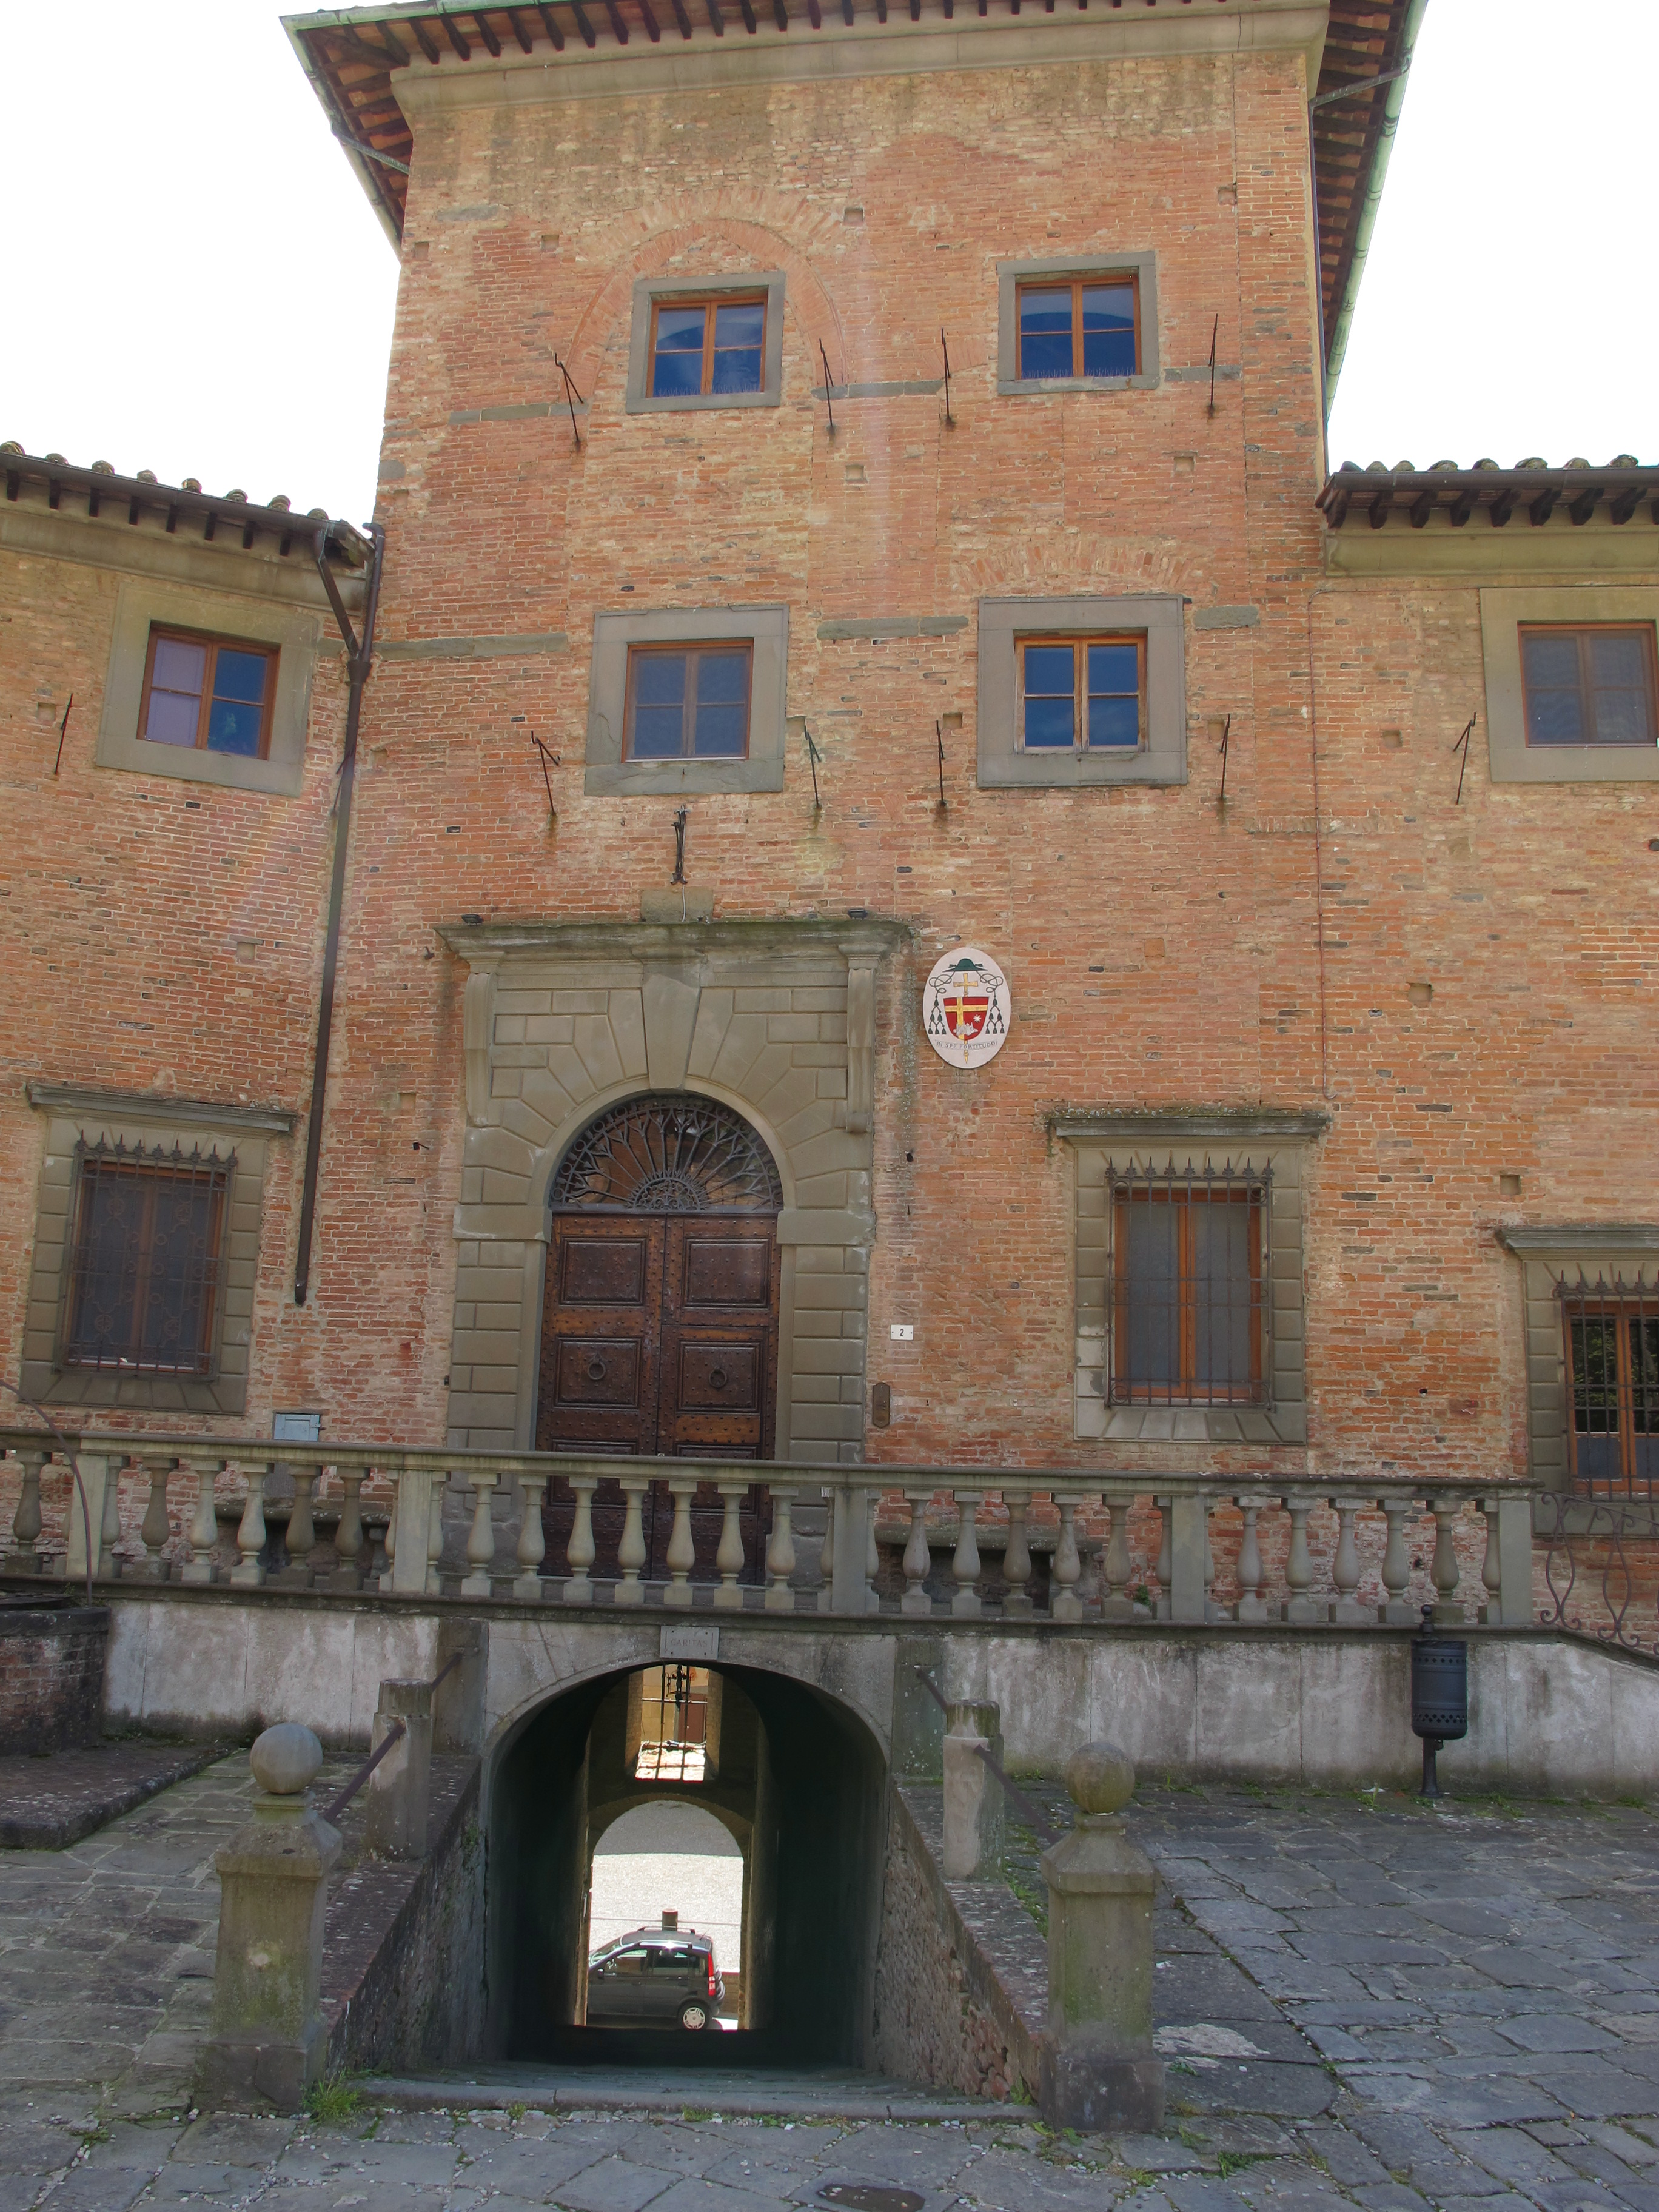 Un pittoresco scorcio del Palazzo del Seminario Vescovile di San Miniato, San Miniato, Pisa